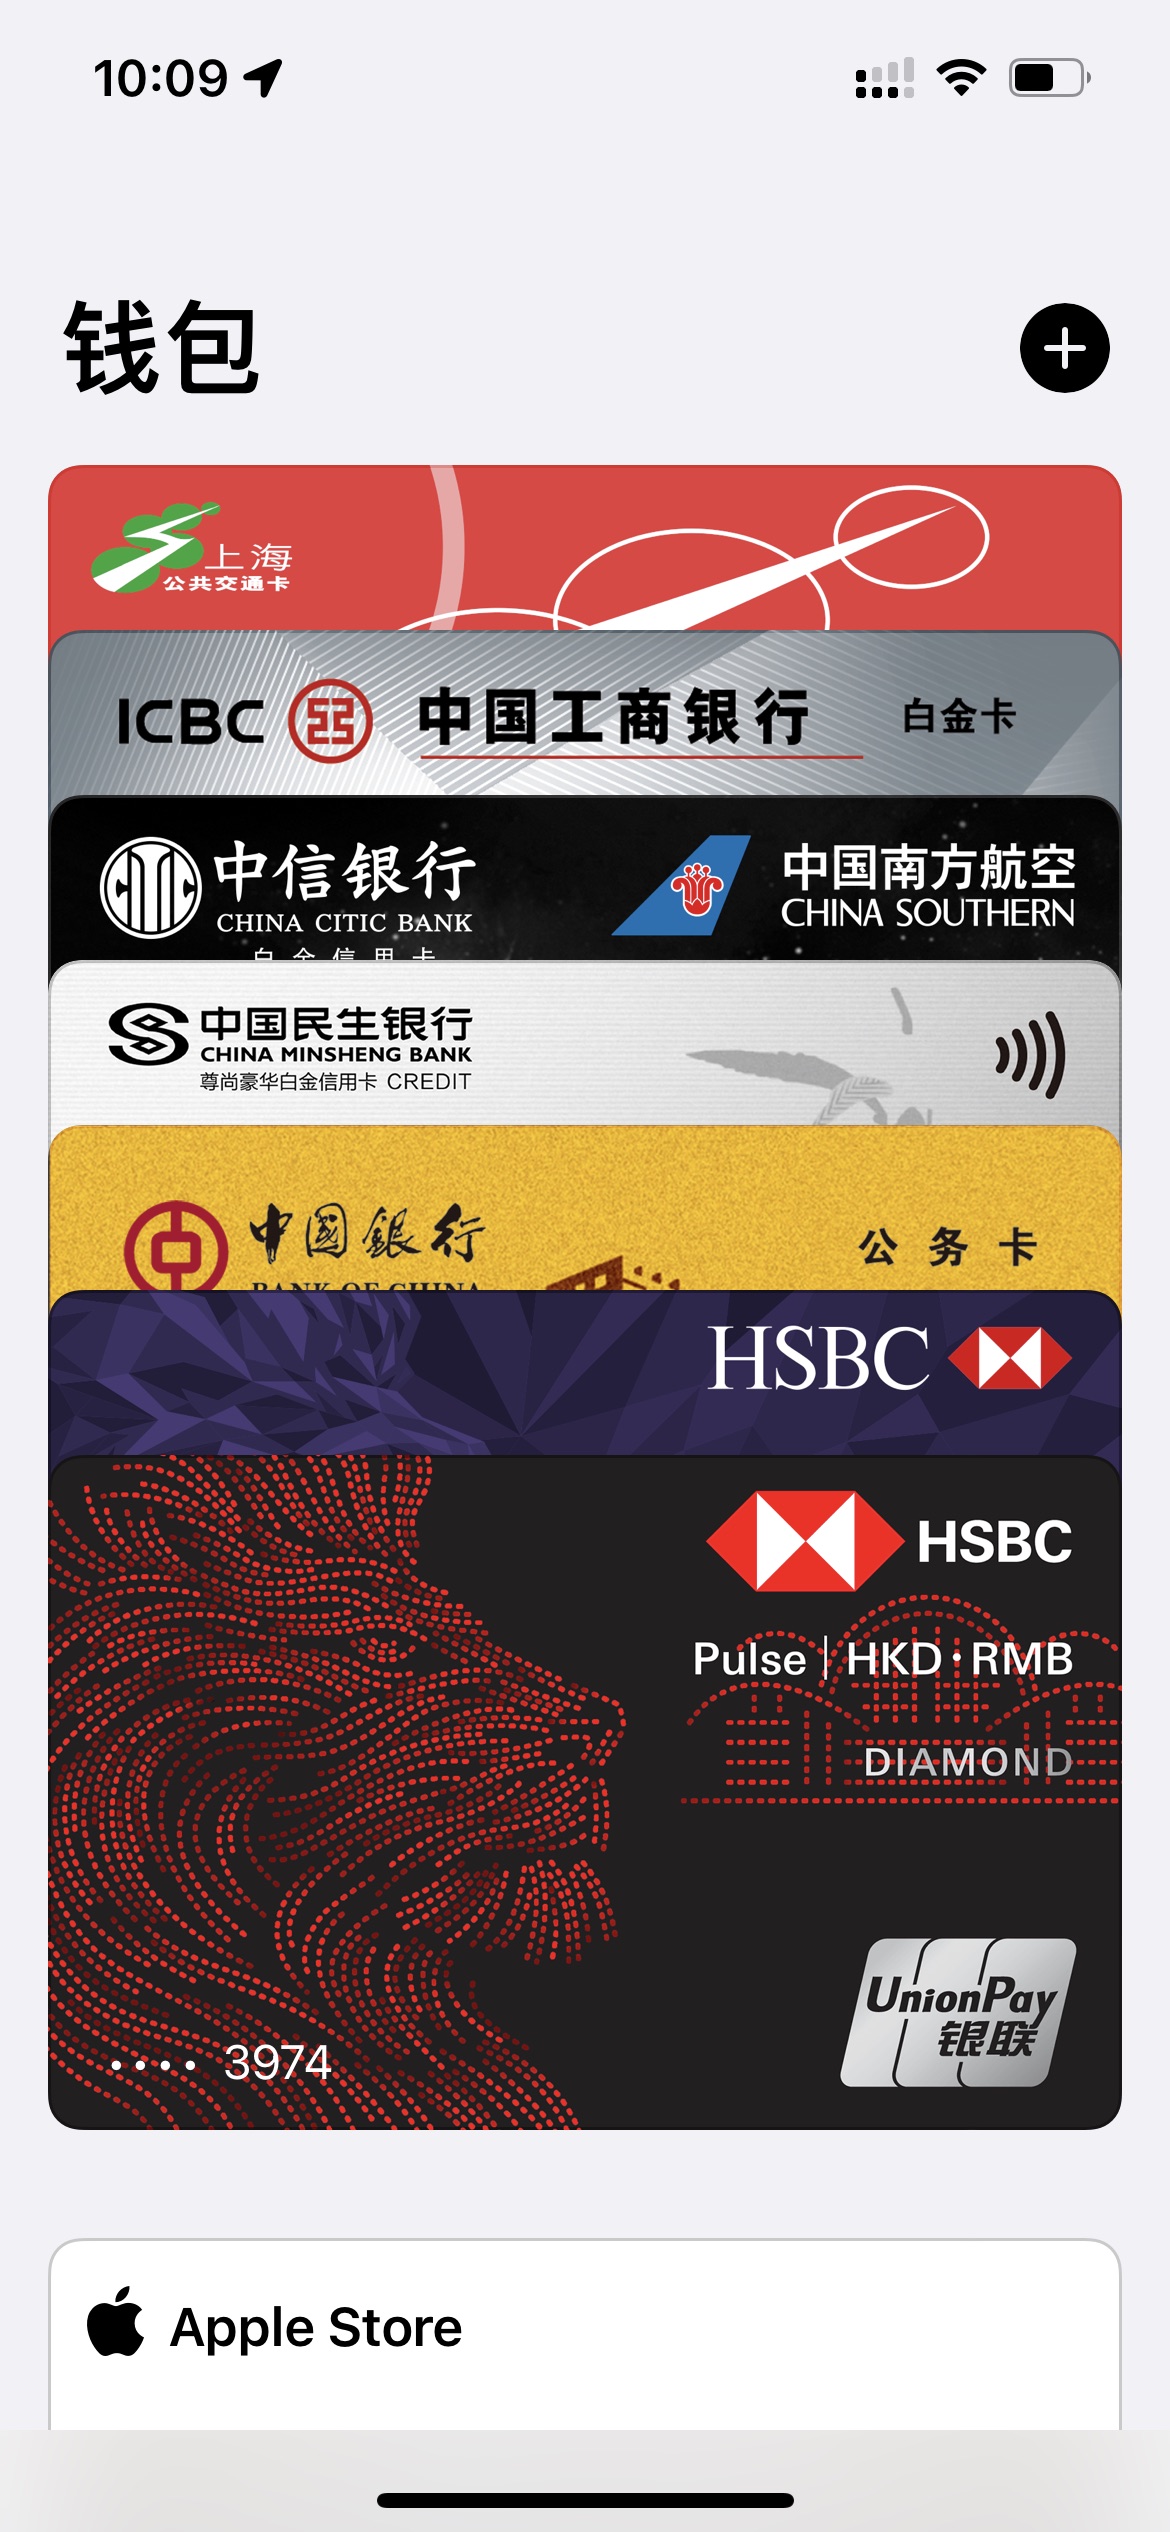 终于等来的HSBC HK的信用卡